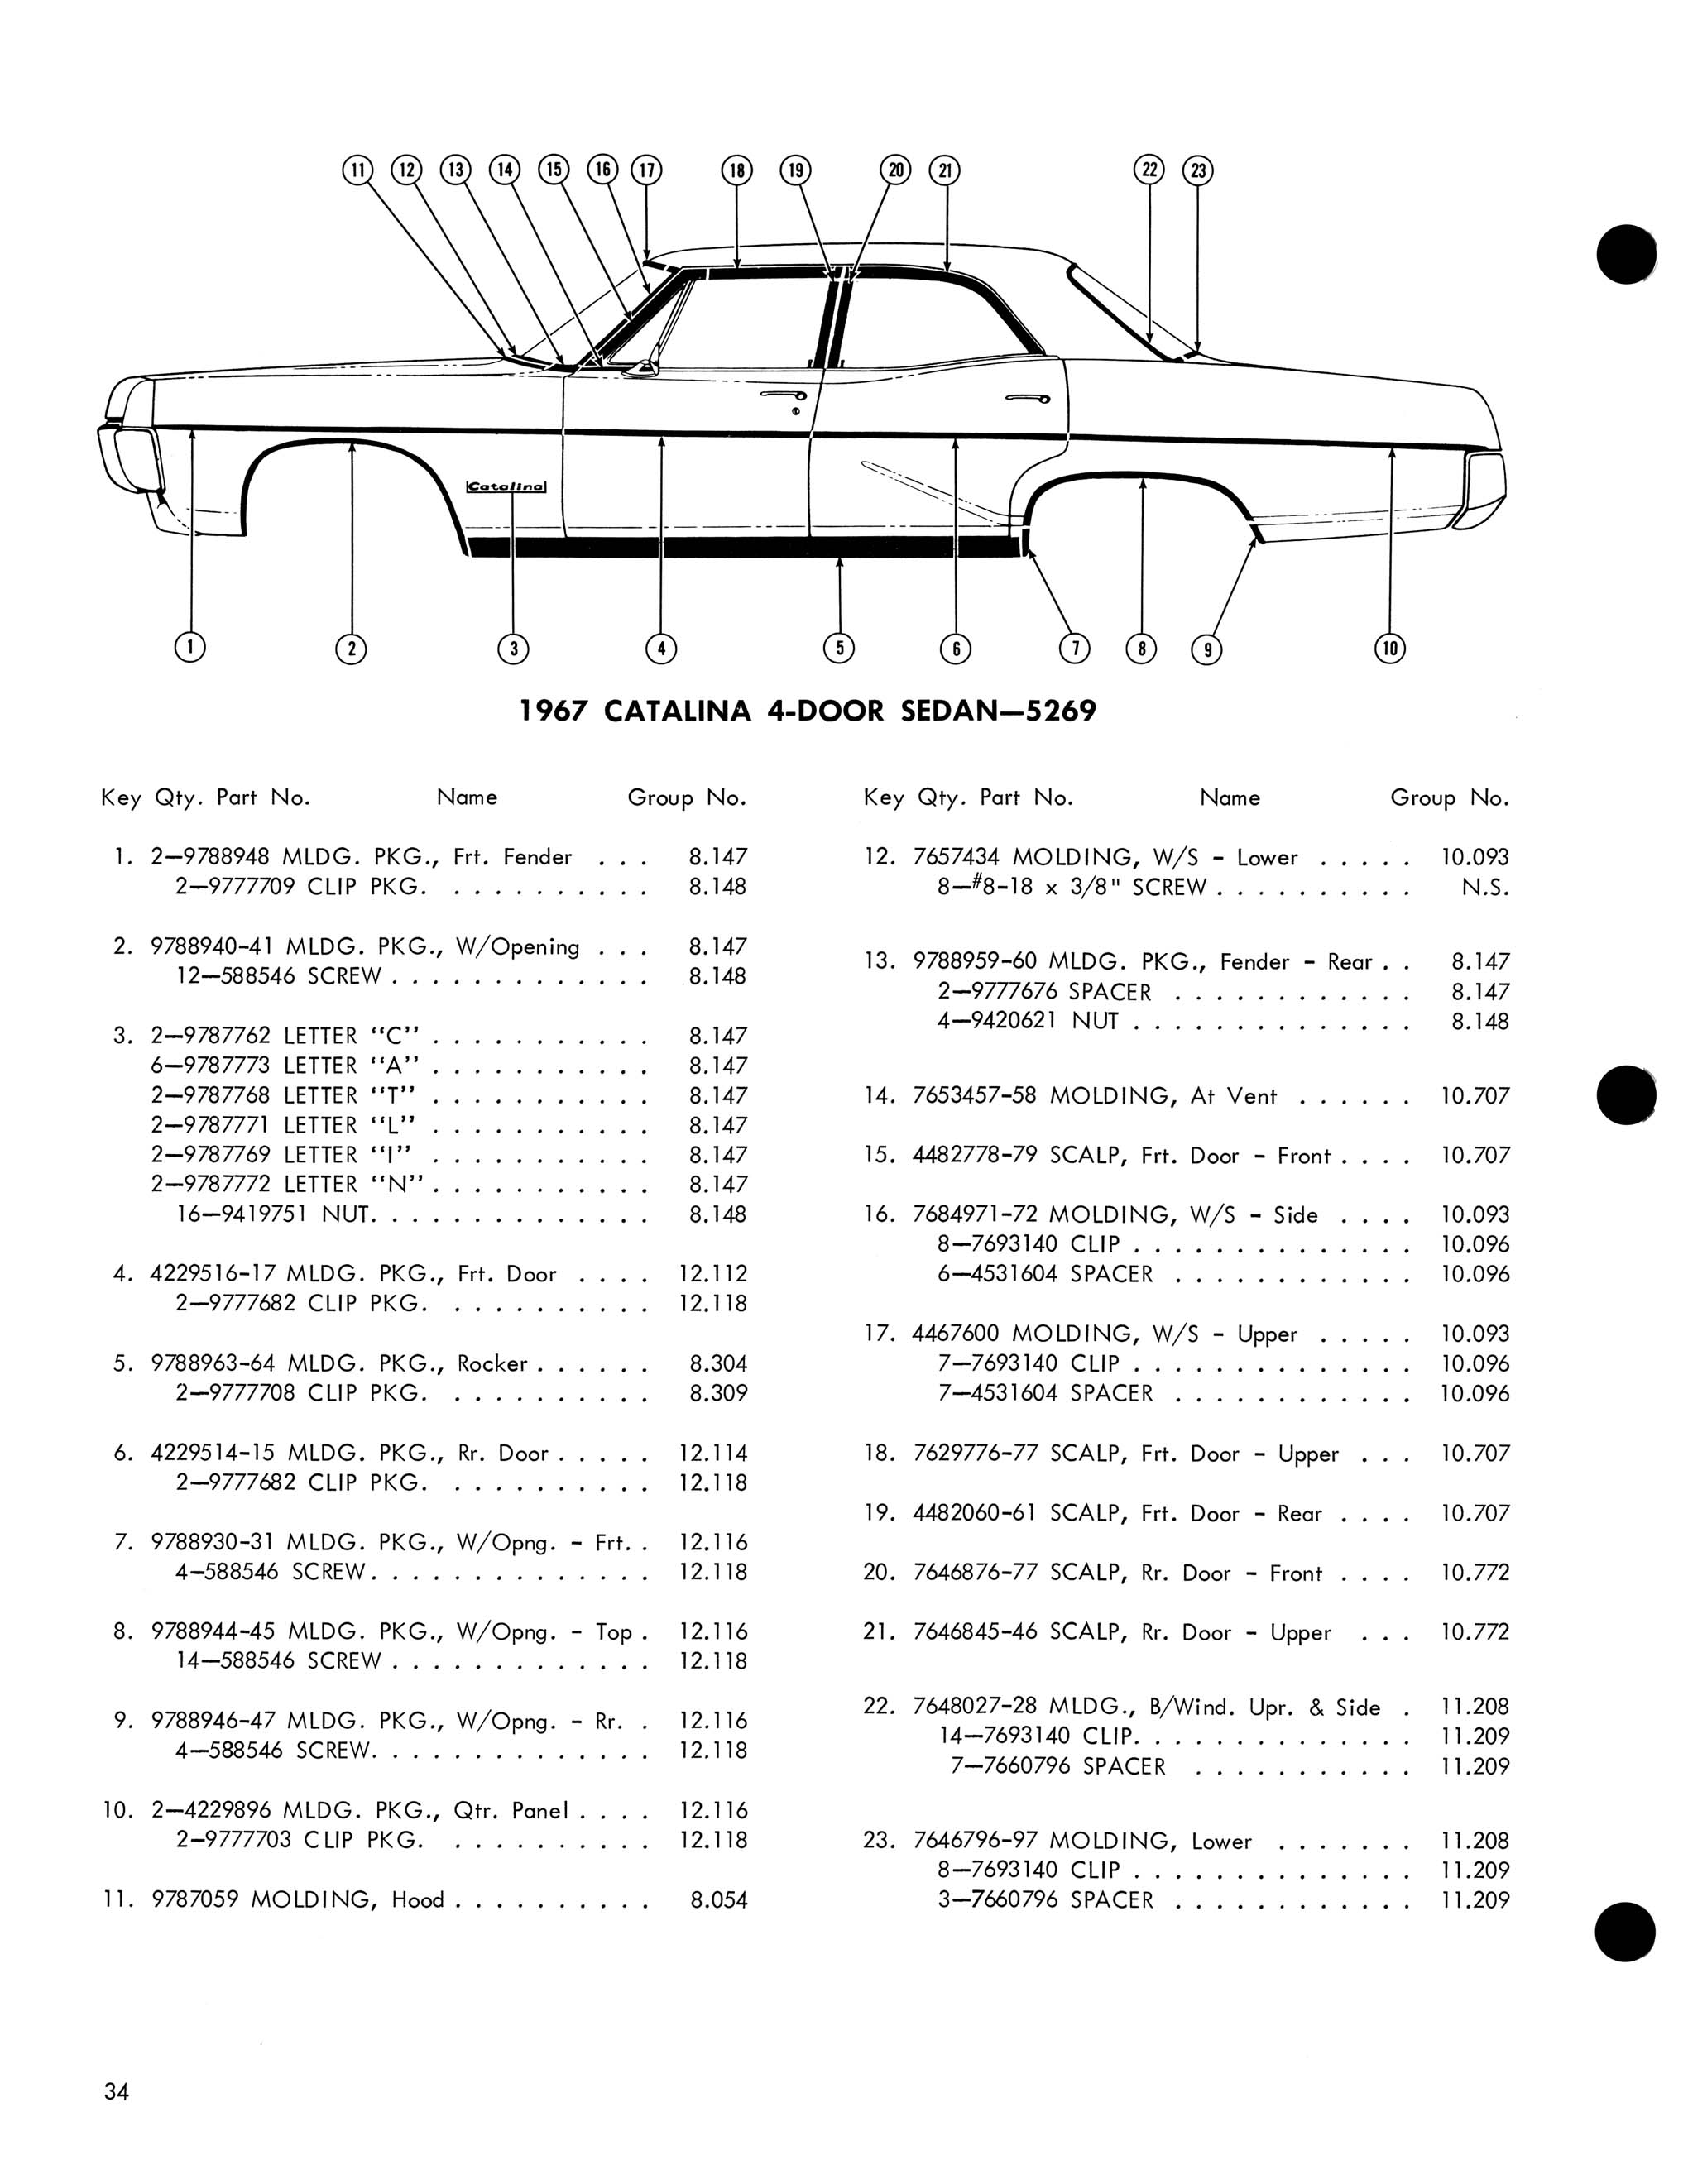 1967 Pontiac Molding and Clip Catalog-34